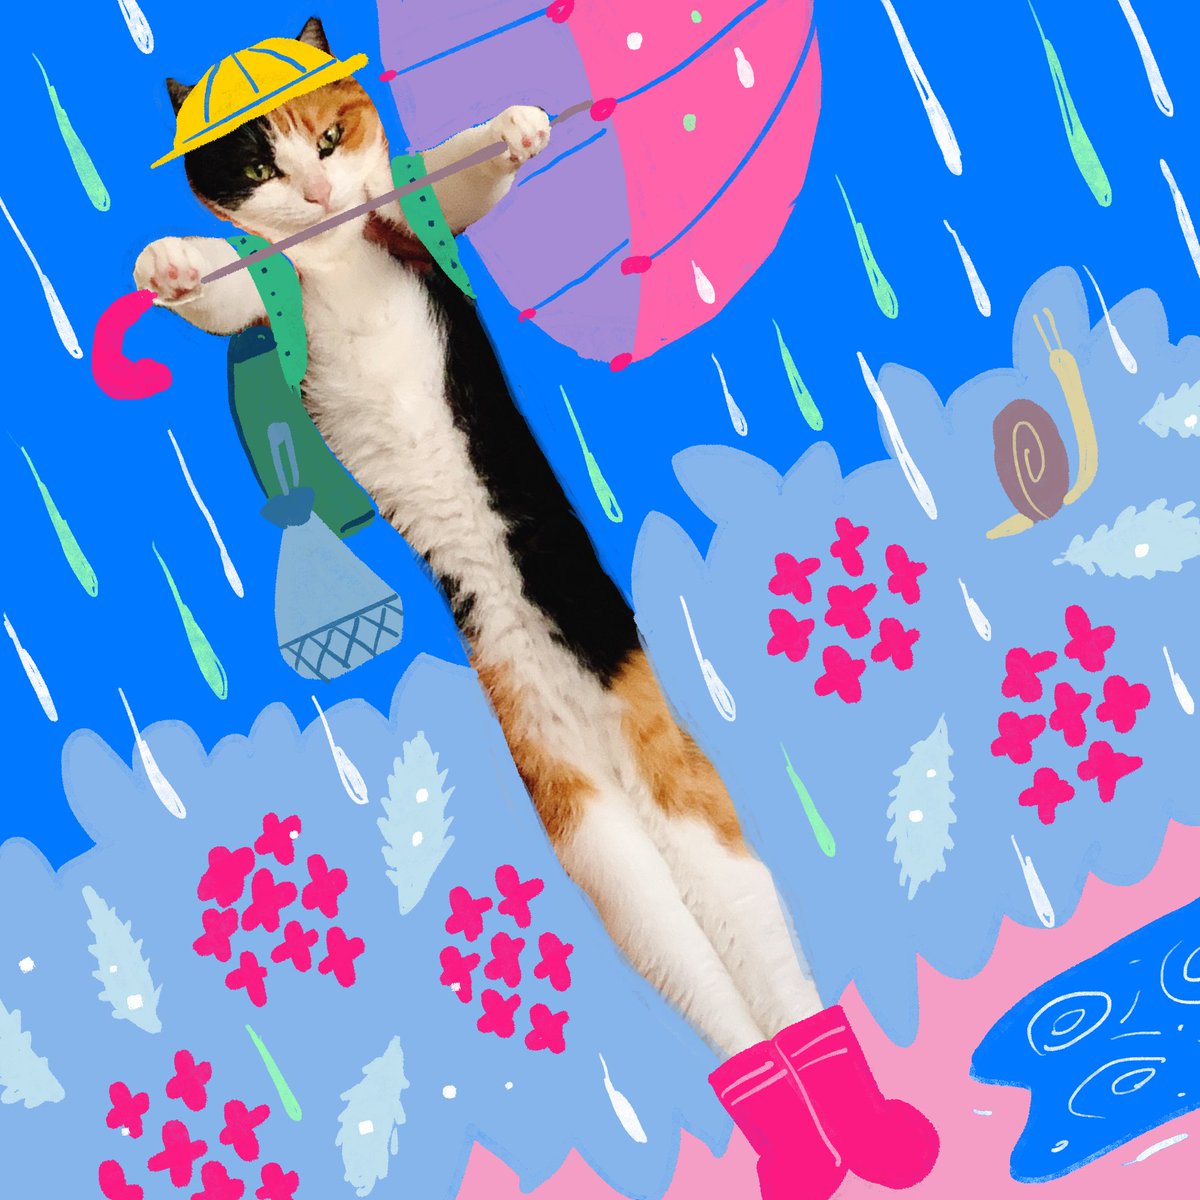 「傘をささずにかっこつける身体が長い小学生猫 」|谷口 菜津子のイラスト